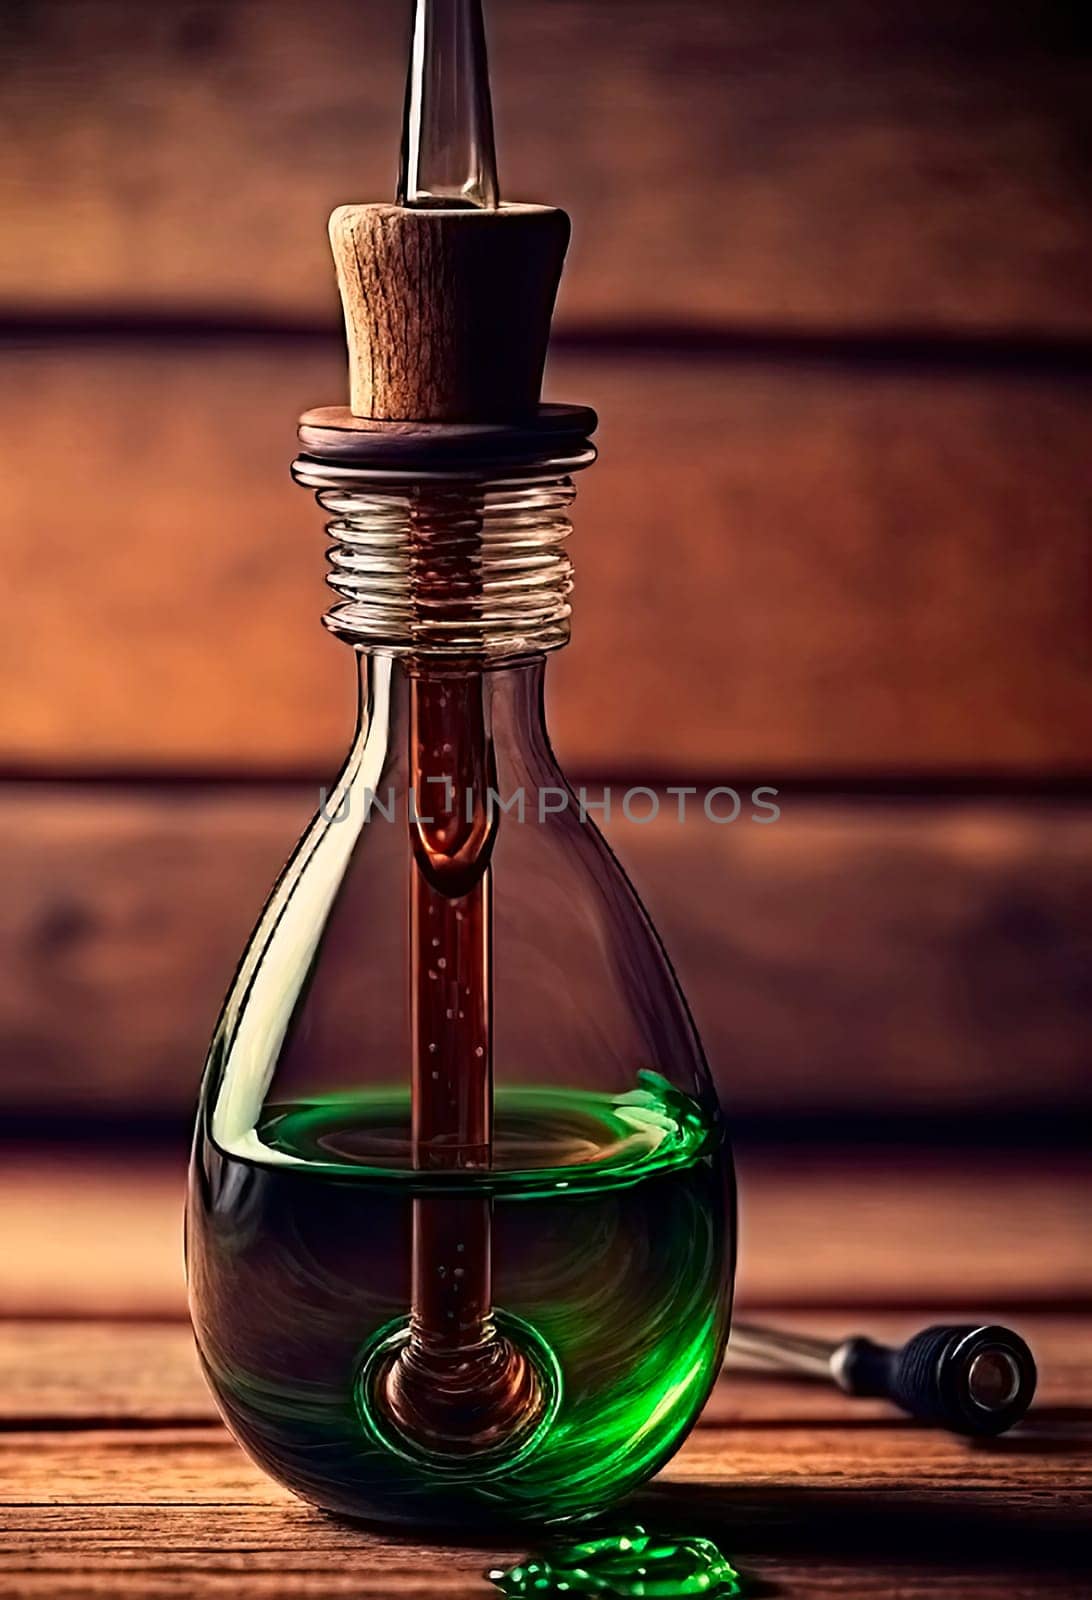 essential oil in a bottle. by yanadjana